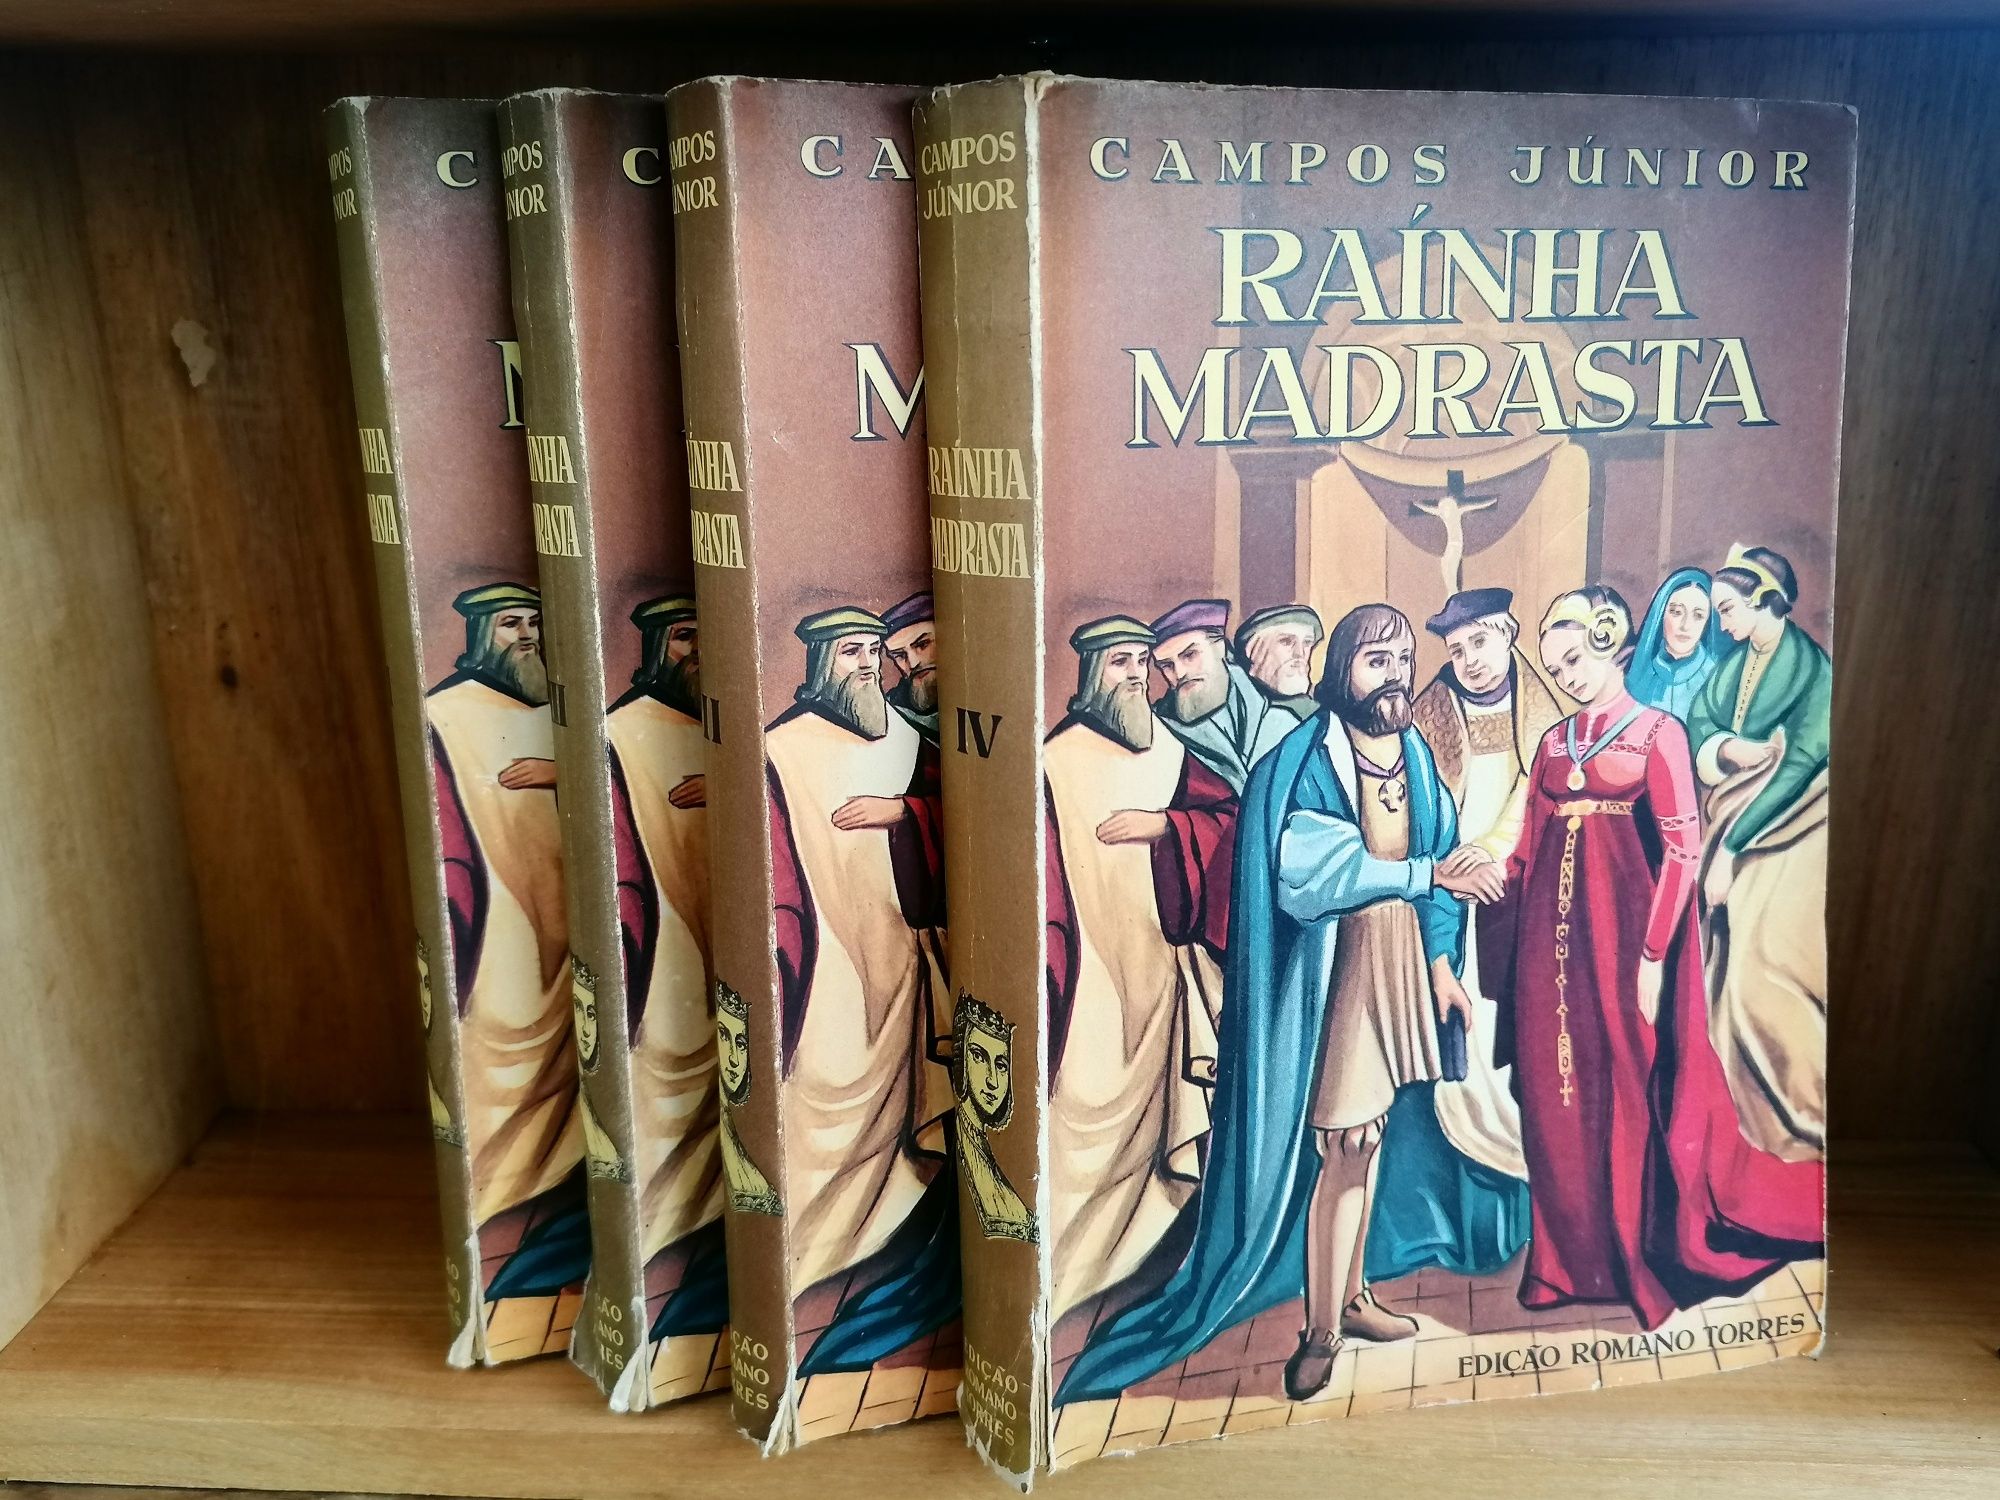 Rainha Madrasta

Campos Júnior

Edição Romano Torres

4 volumes